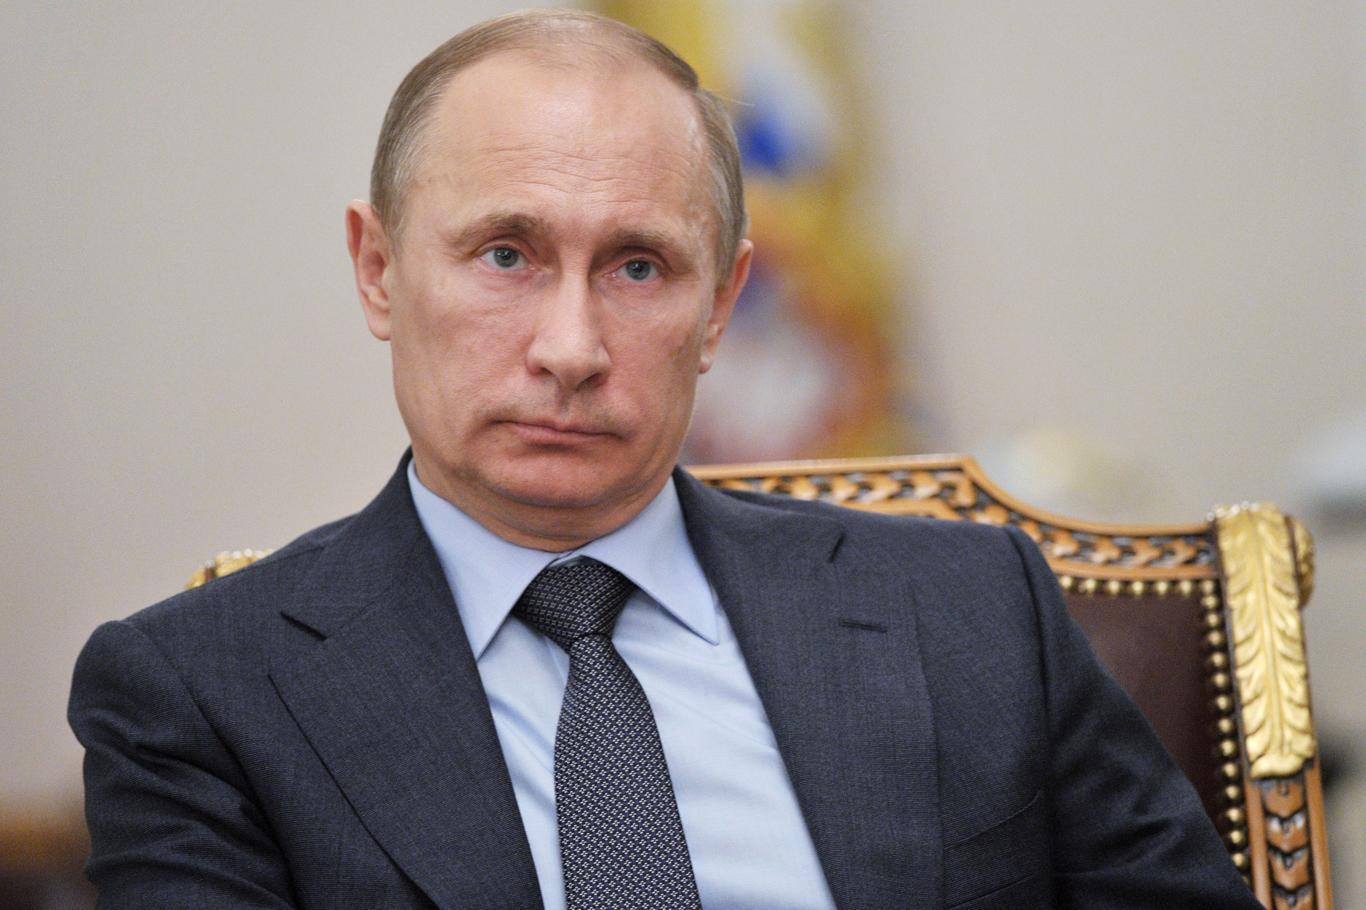 Putin, ülkesinde "eşcinsel evliliğe" onay vermeyeceğini açıkladı